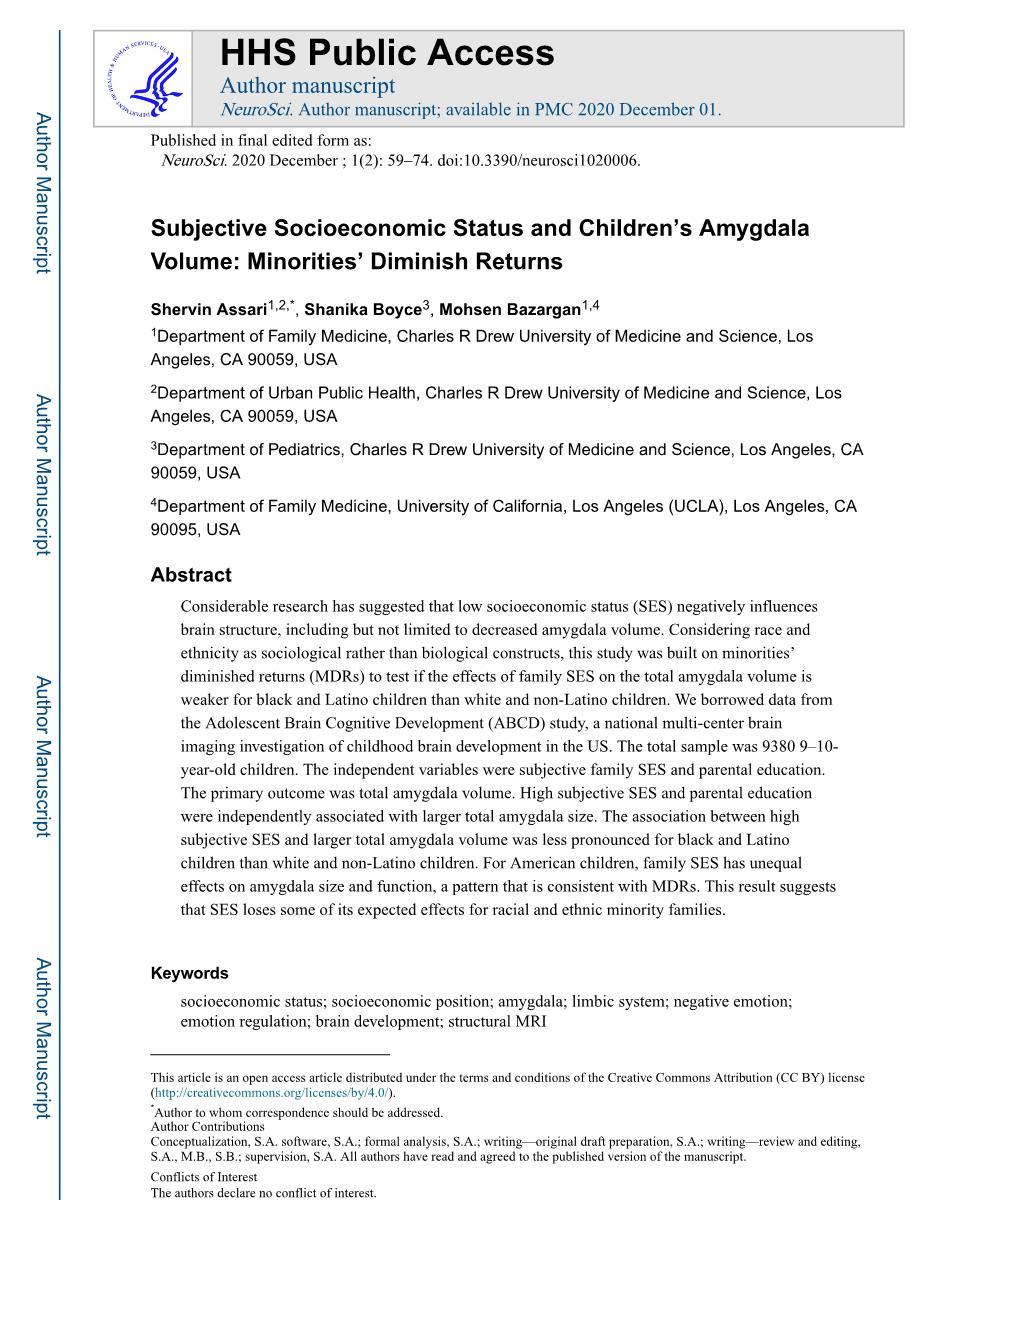 Subjective Socioeconomic Status and Children's